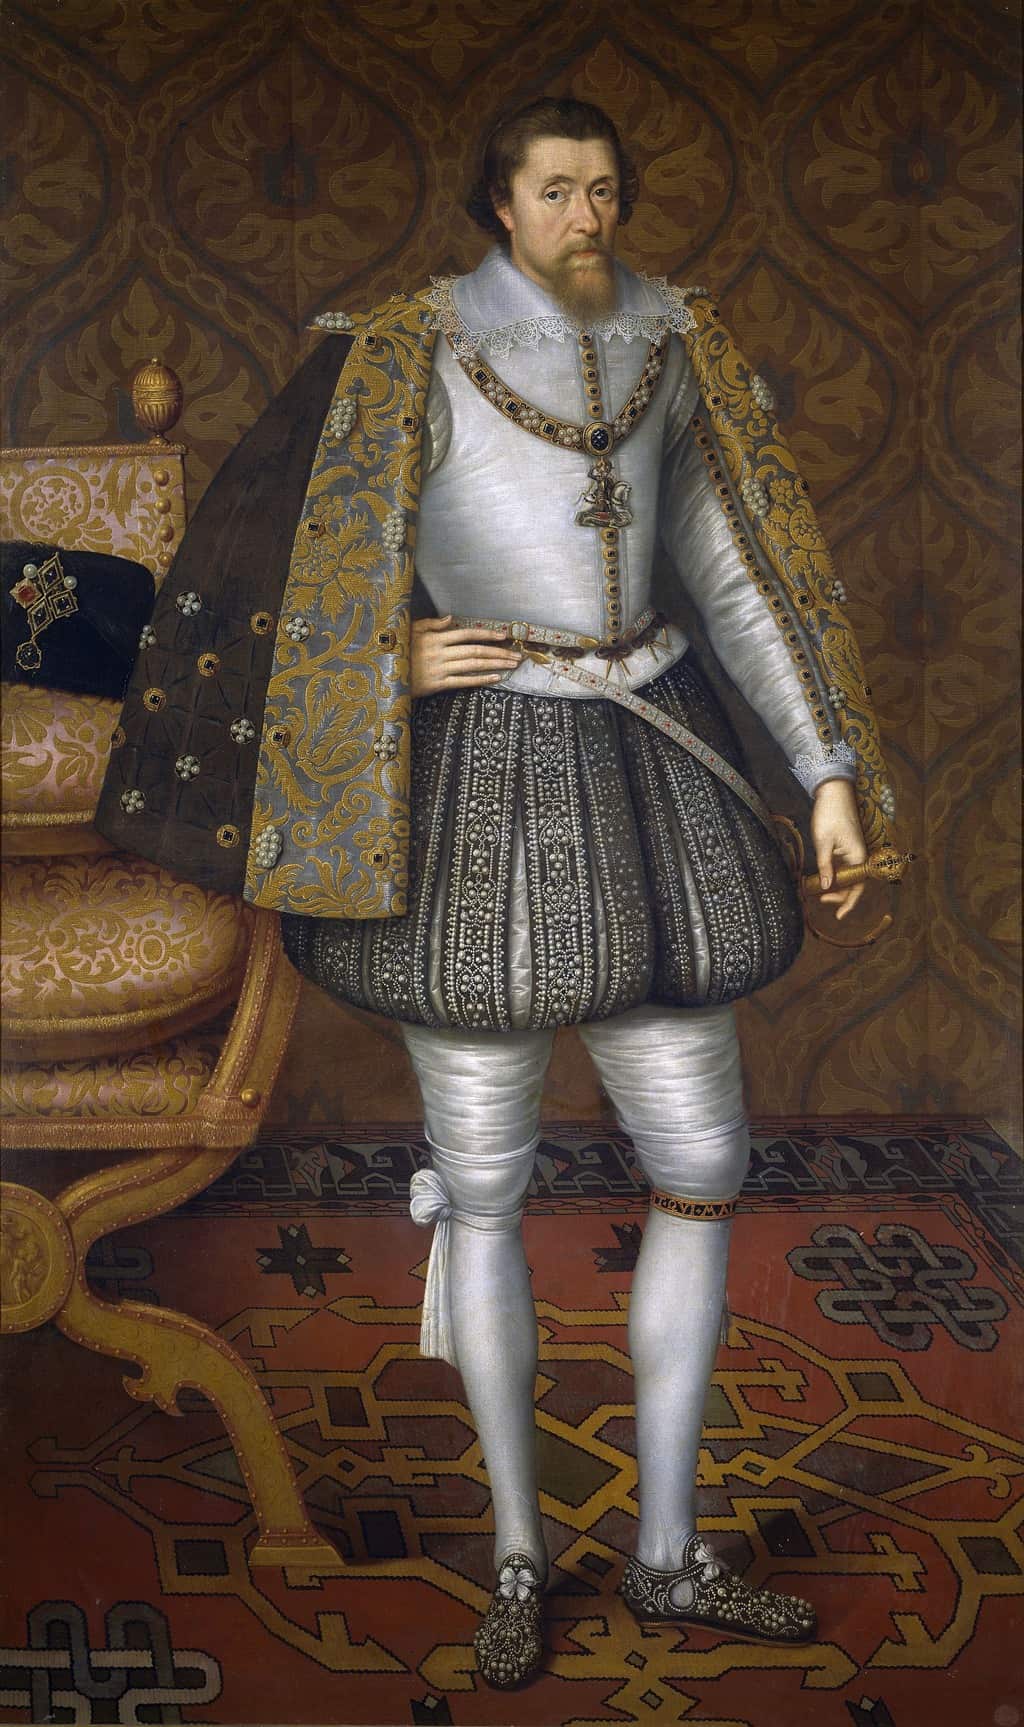 ملك إنجلترا جيمس الأول، بريشة جون دي كريتز (حوالي 1605). ويكيميديا ​​كومونز